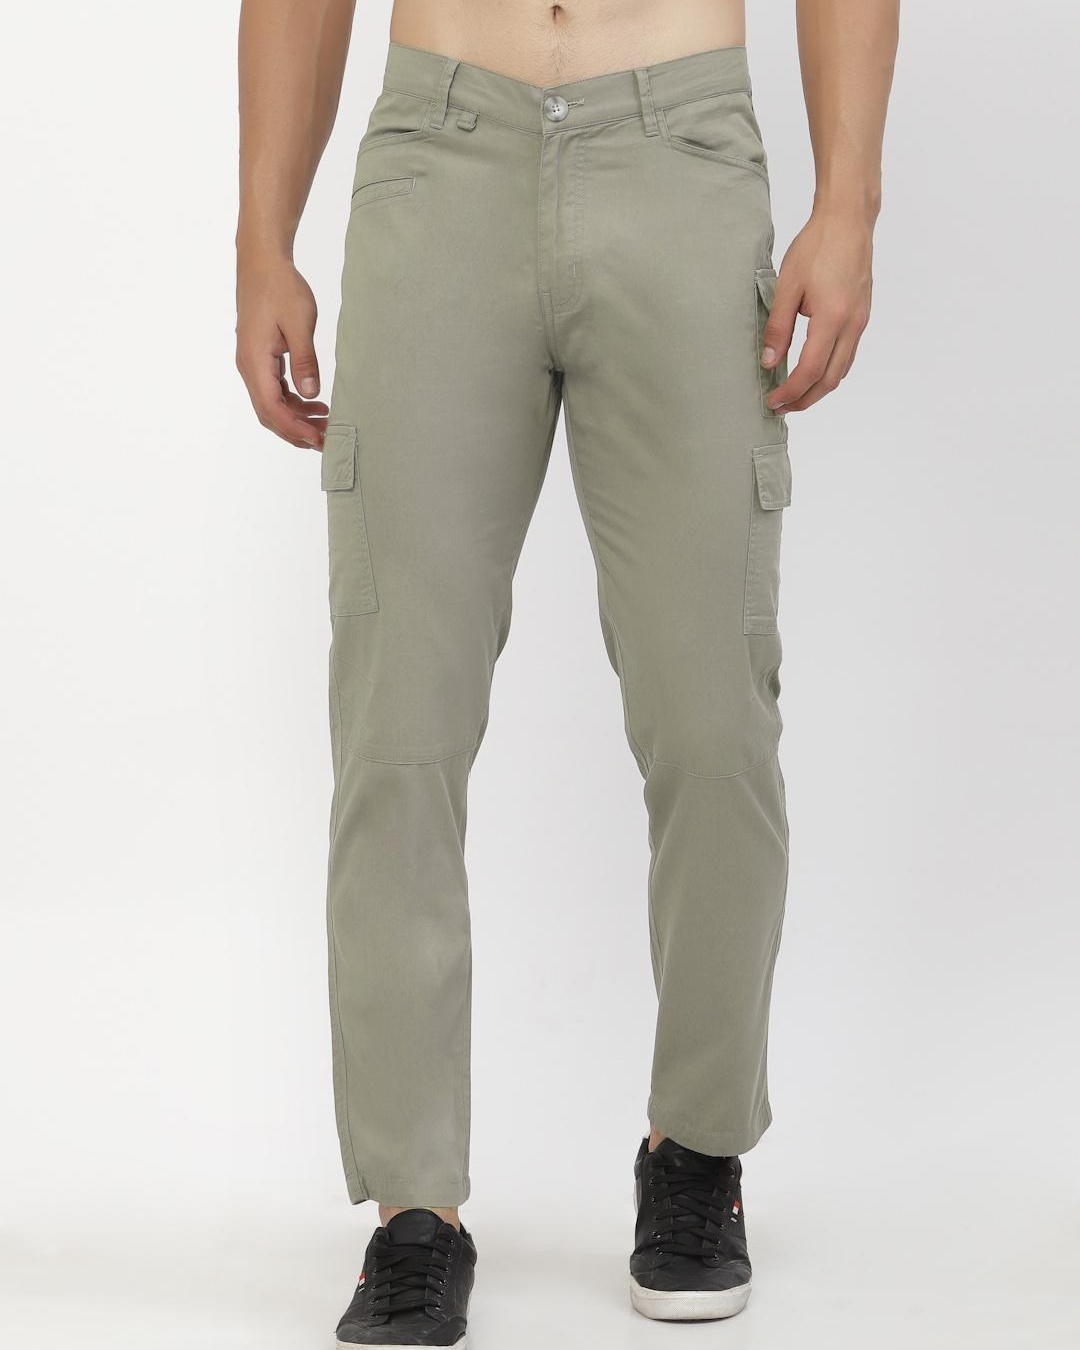 Buy Men's Green Cargo Trousers Online at Bewakoof